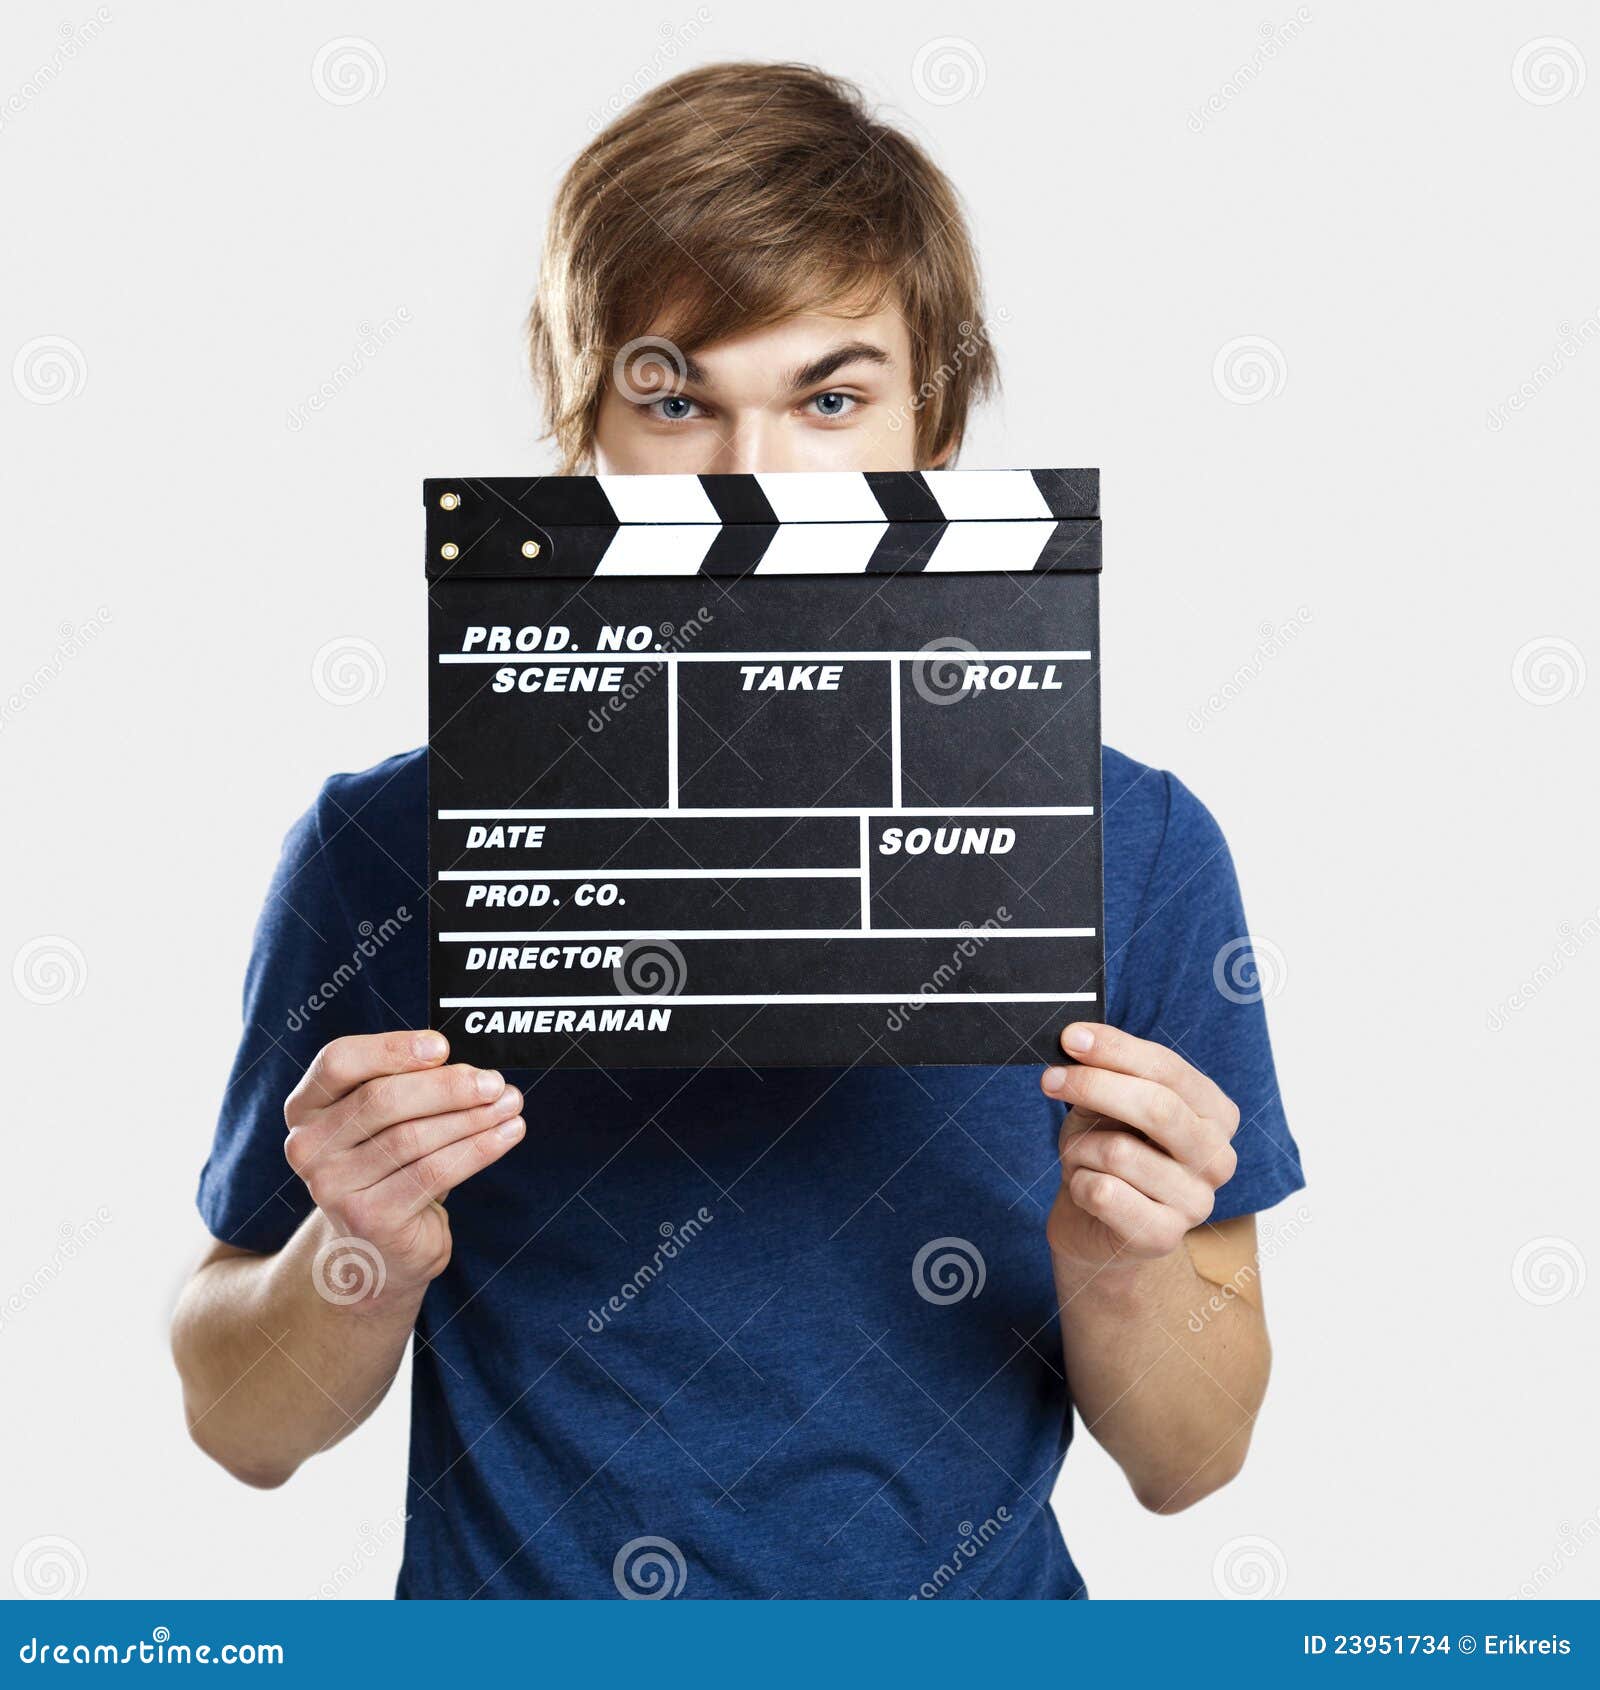 Uppvisning av en clapboard. Stående av en ung man som kikar bak en clapboard, över en grå bakgrund